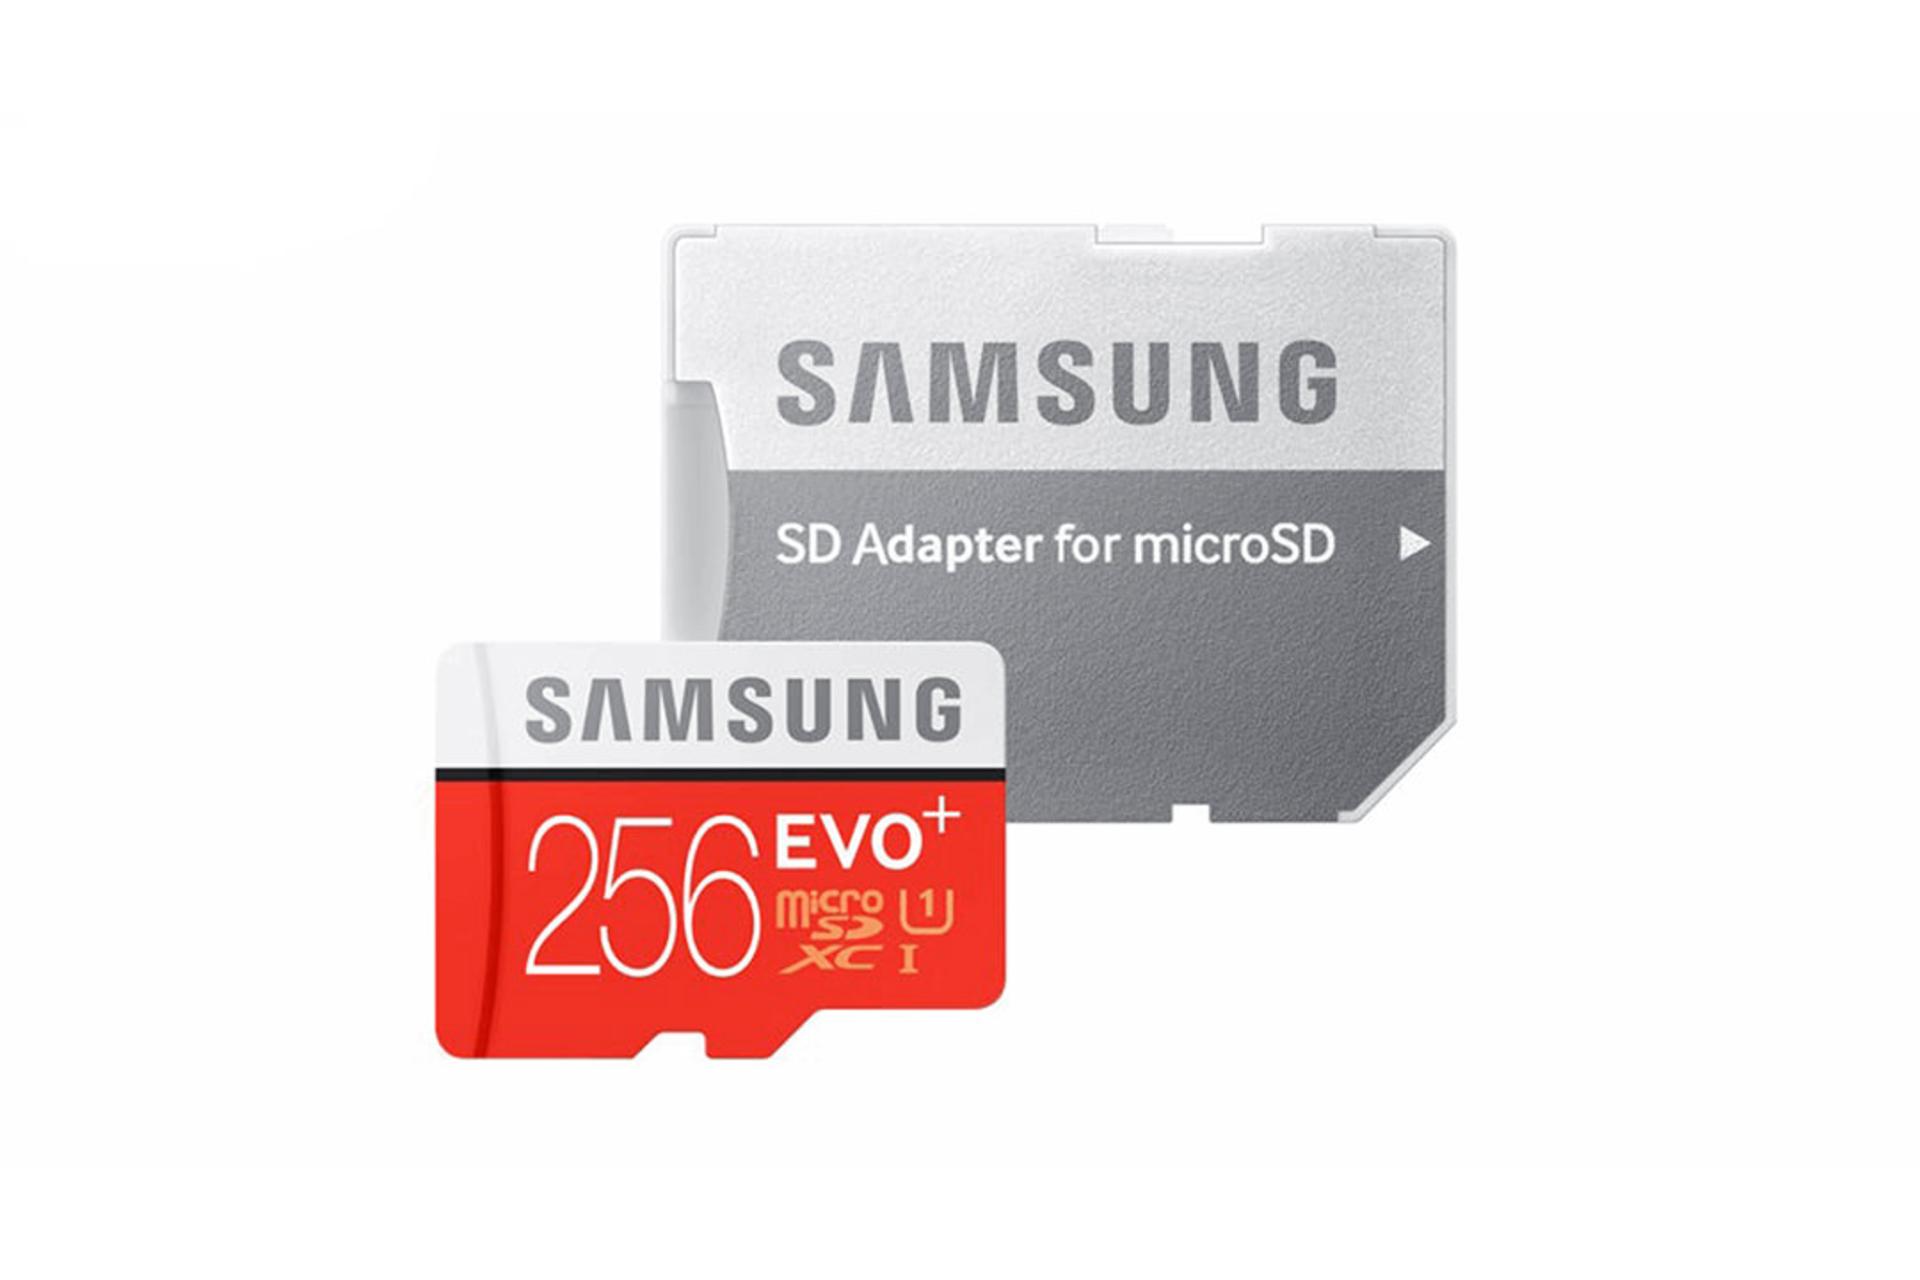 مرجع متخصصين ايران Samsung Evo Plus microSDXC Class 10 UHS-I U1 256GB